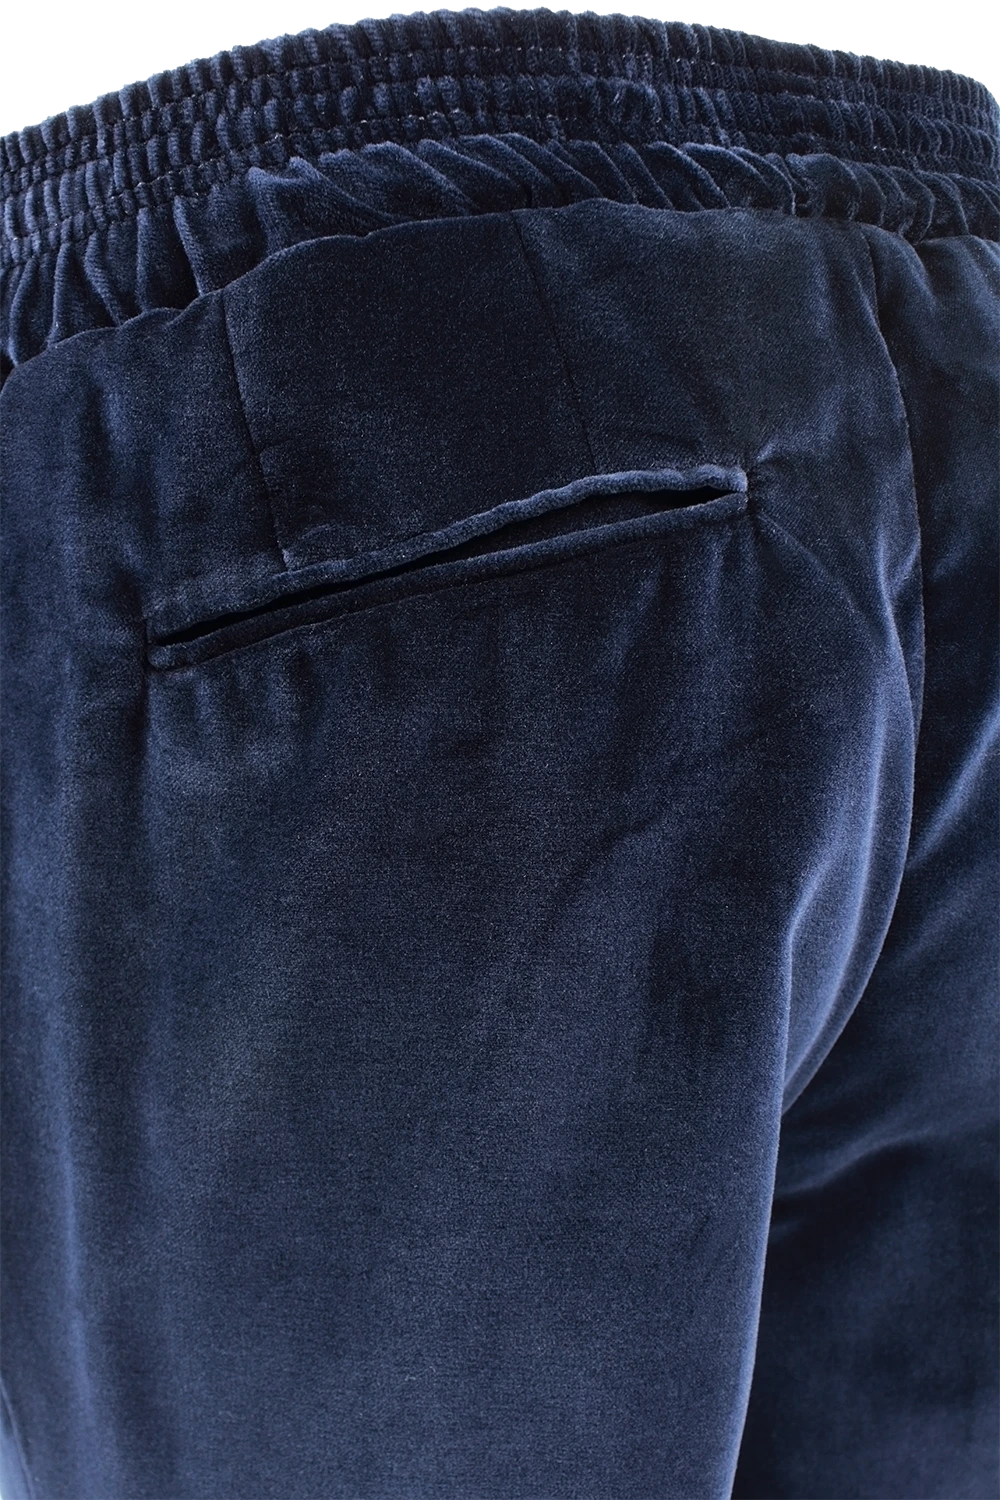 Pantalone con elastico in vita in velluto liscio blu filetti